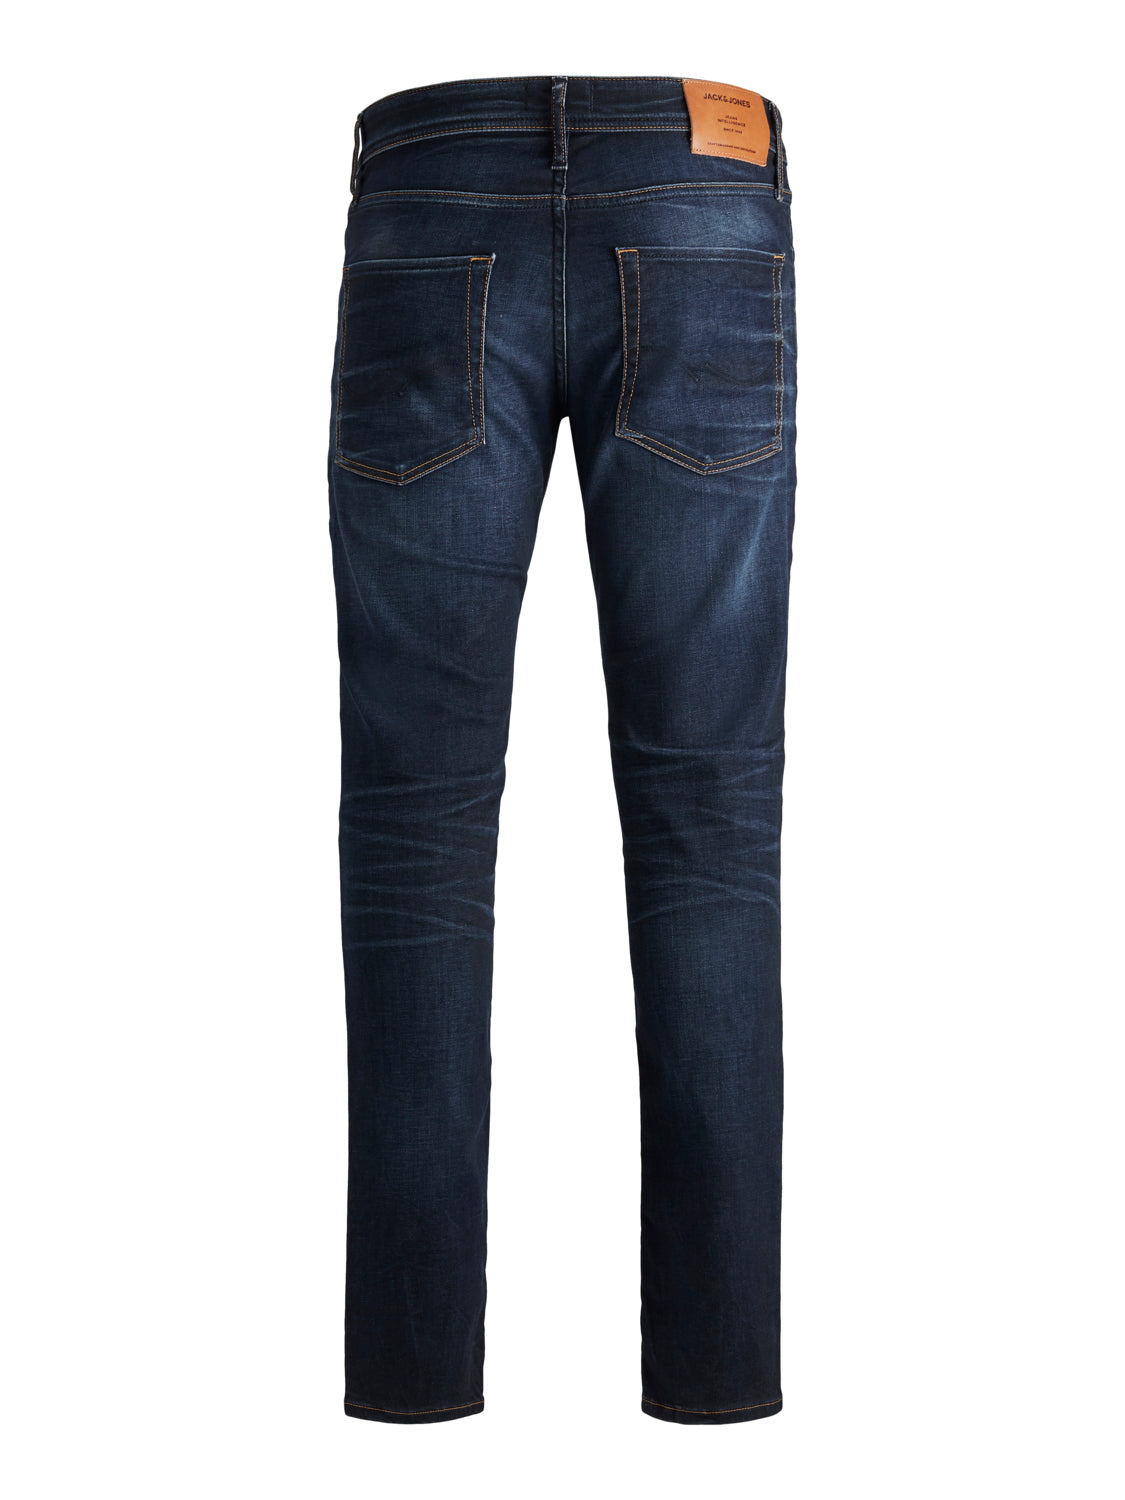 JJITIM Jeans - blue denim